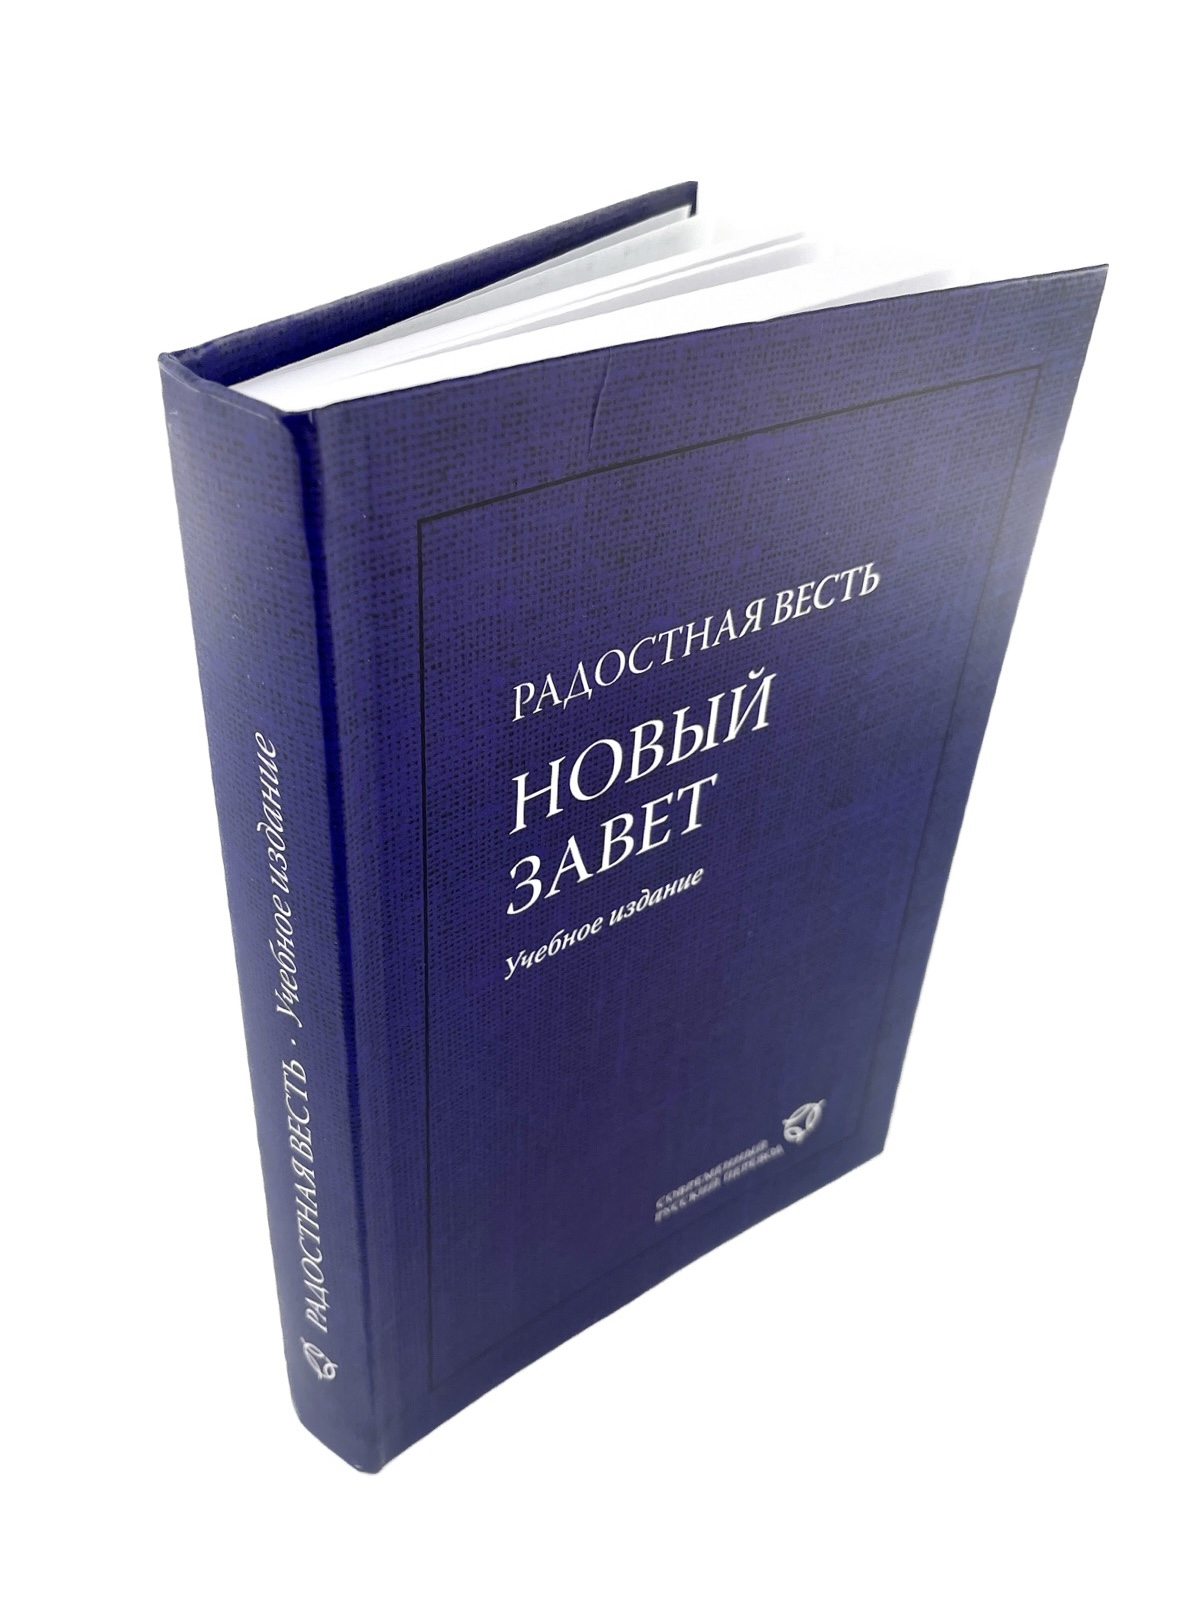 Новый Завет Современный русский перевод учебное издание